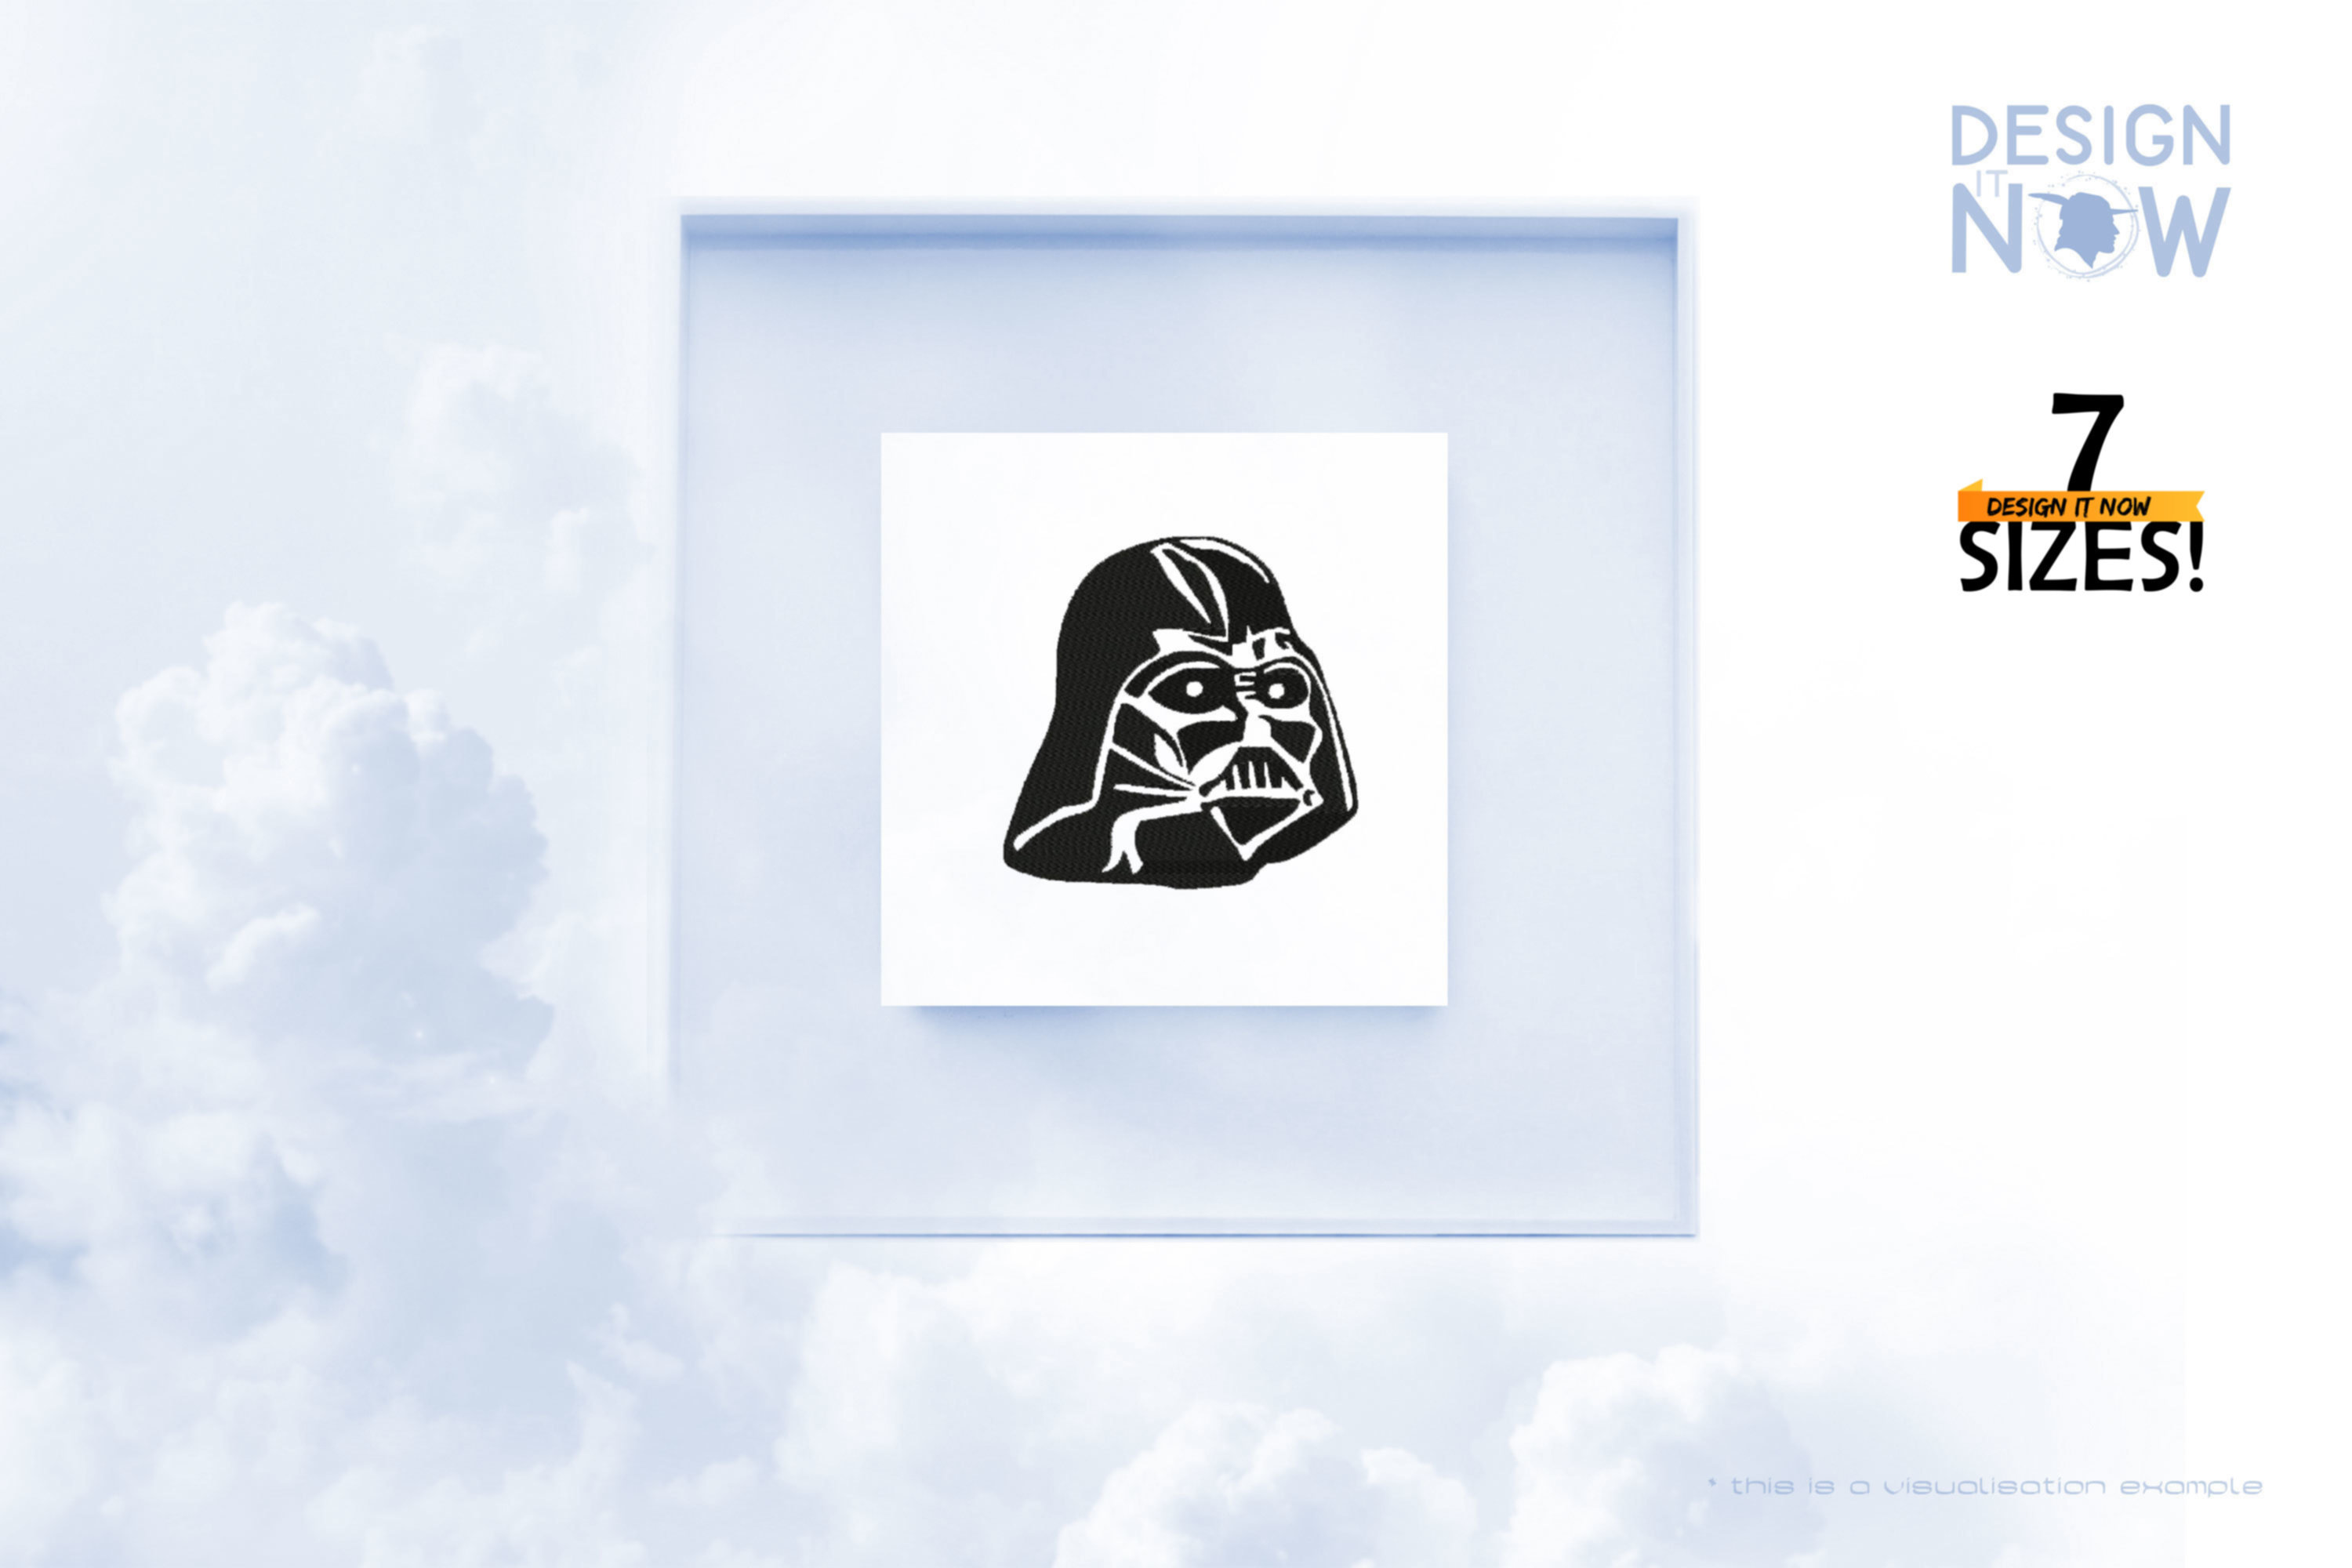 Tribute To Fictional Star Wars Character Darth Vader aka Darth Vader 